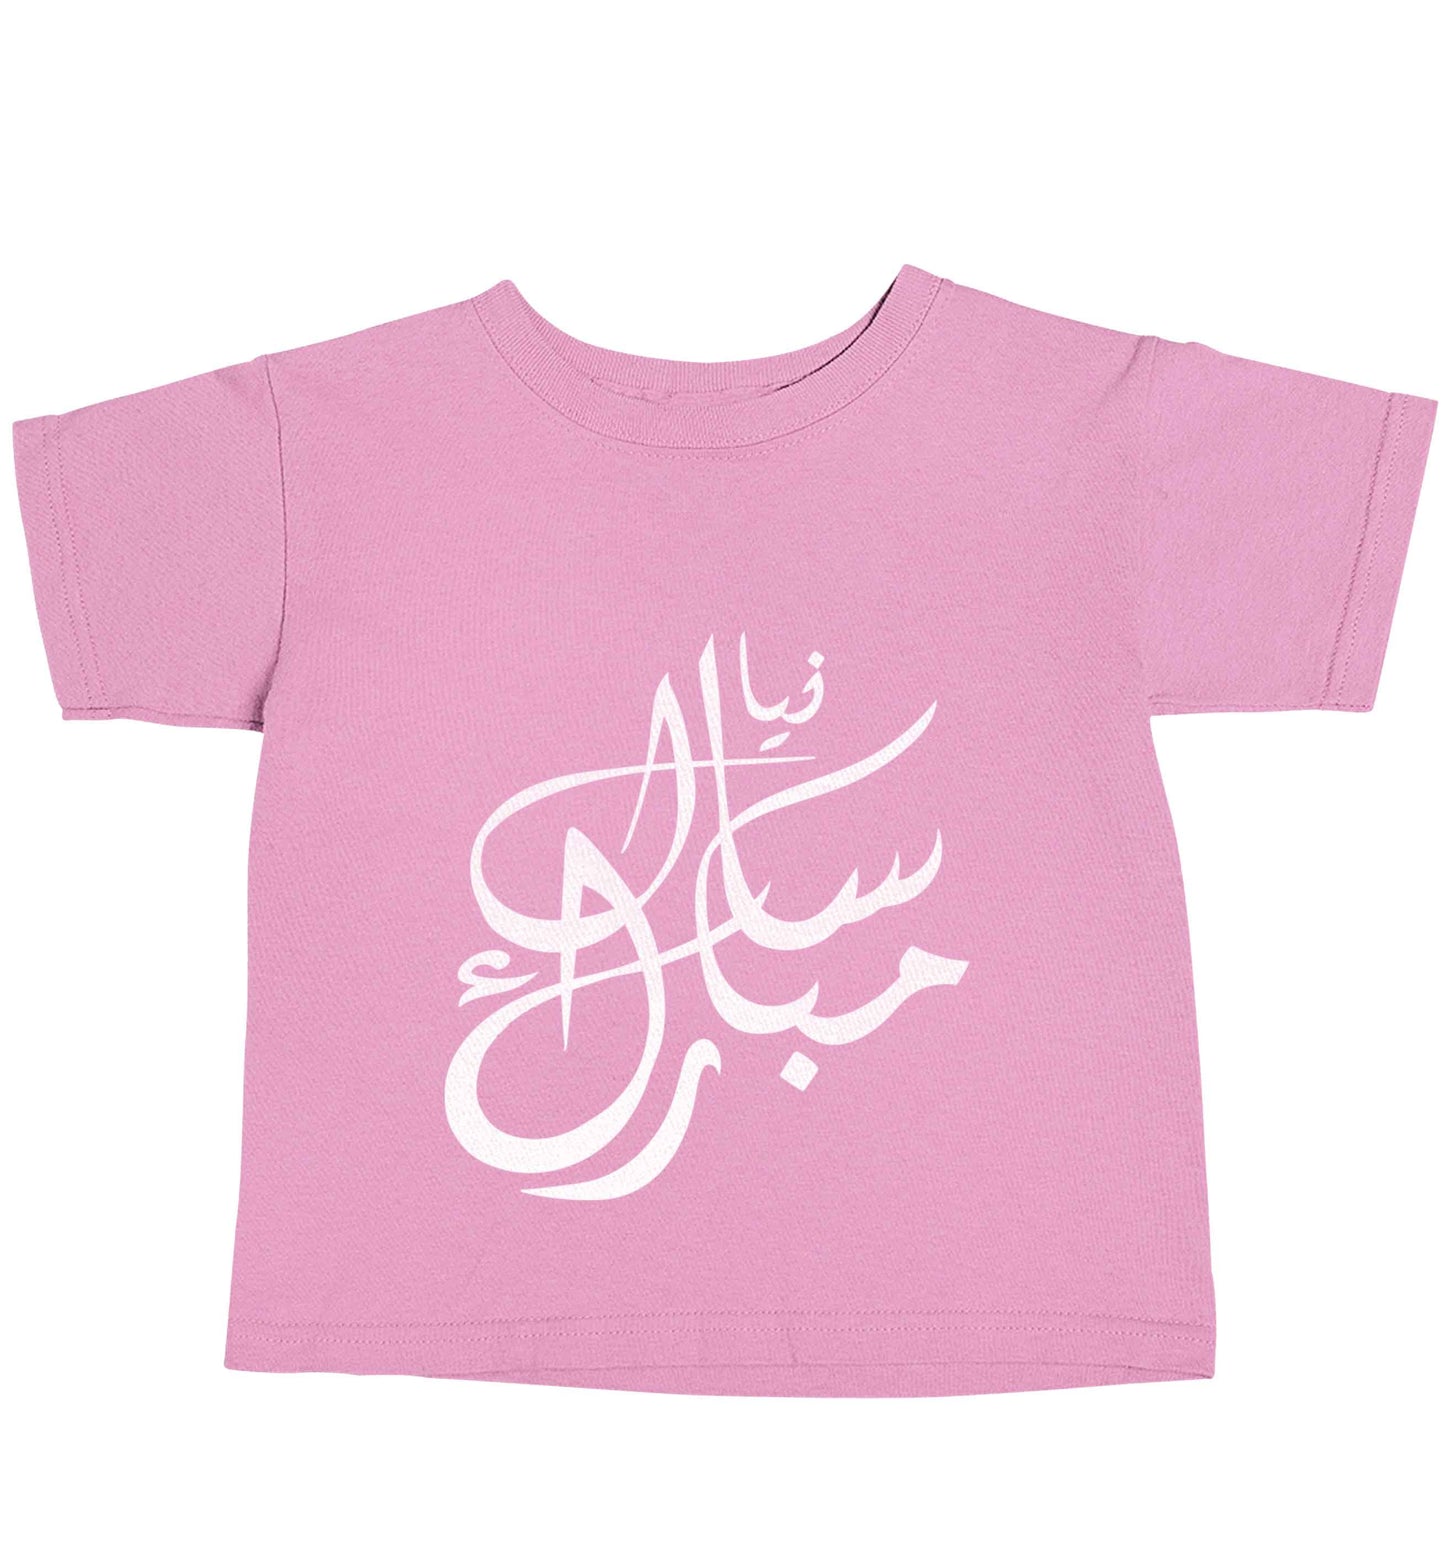 Urdu Naya saal mubarak light pink baby toddler Tshirt 2 Years